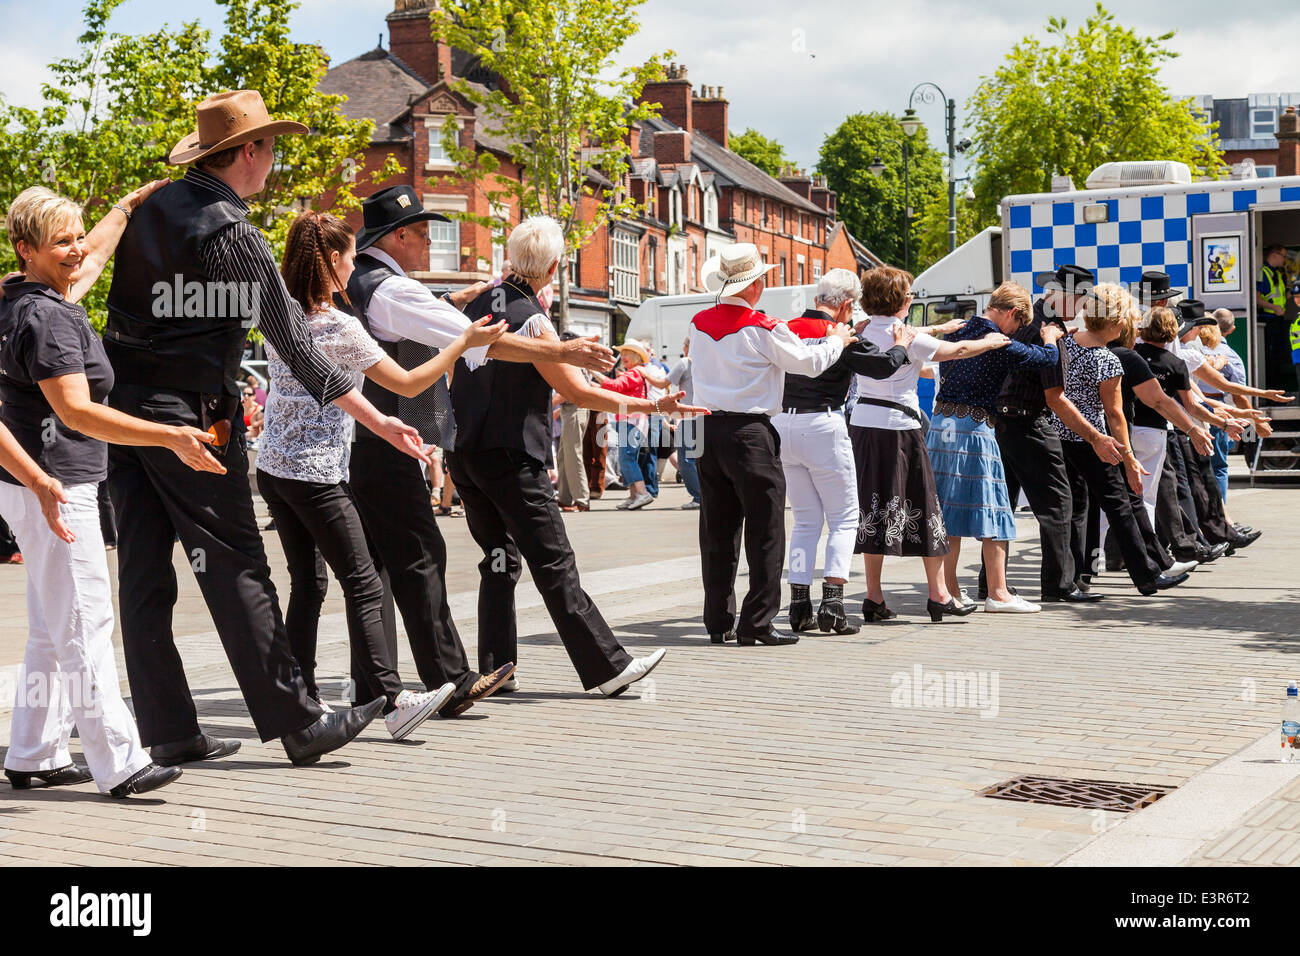 Les gens de danse en ligne à Leek centre-ville. Poireau, Staffordshire, Angleterre, Royaume-Uni. Banque D'Images